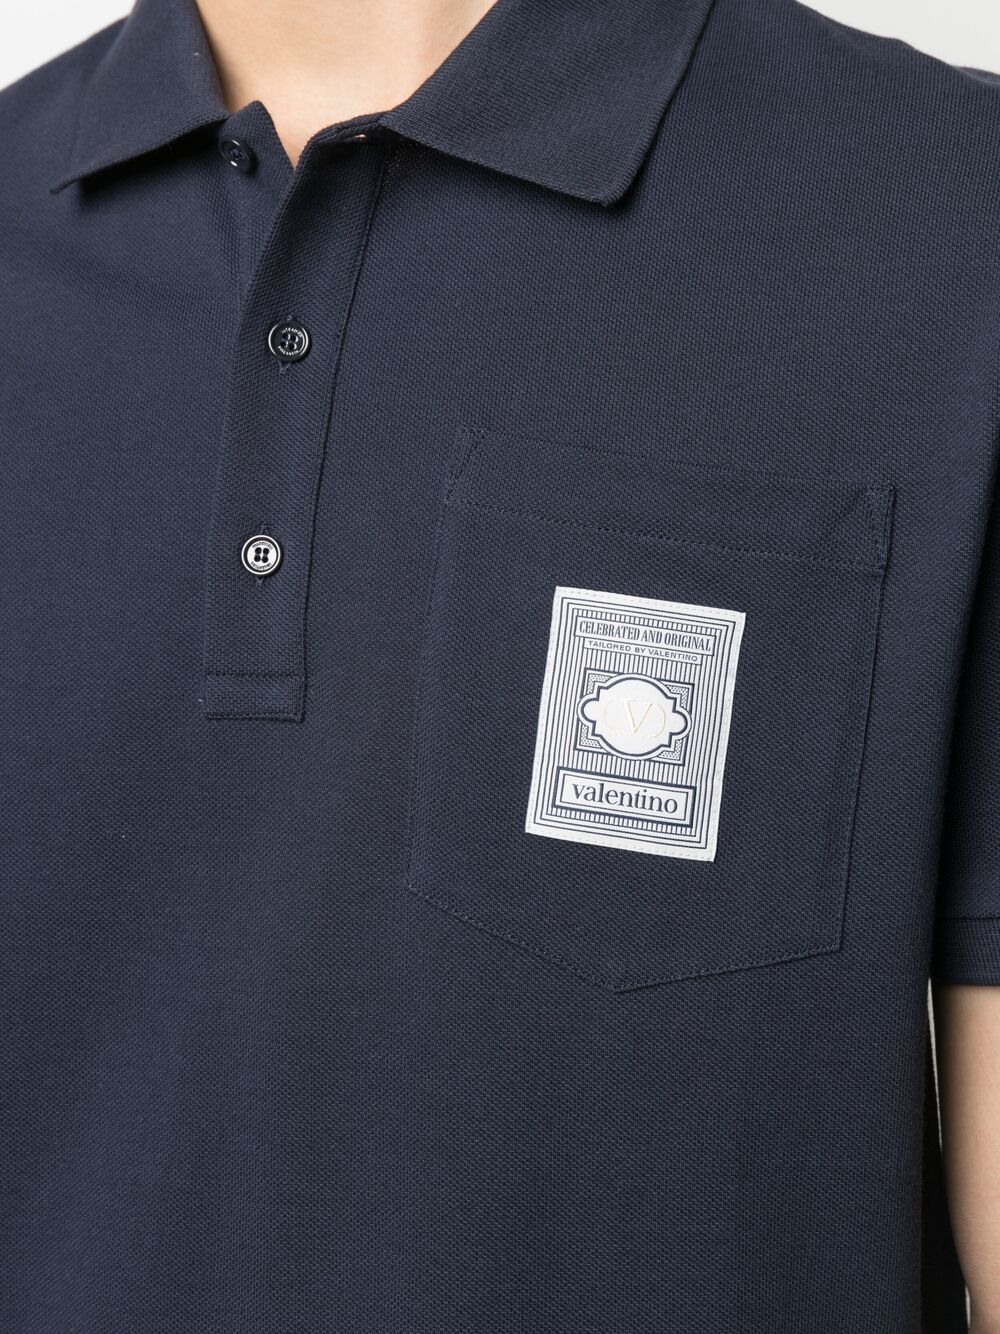 фото Valentino рубашка поло с нашивкой-логотипом